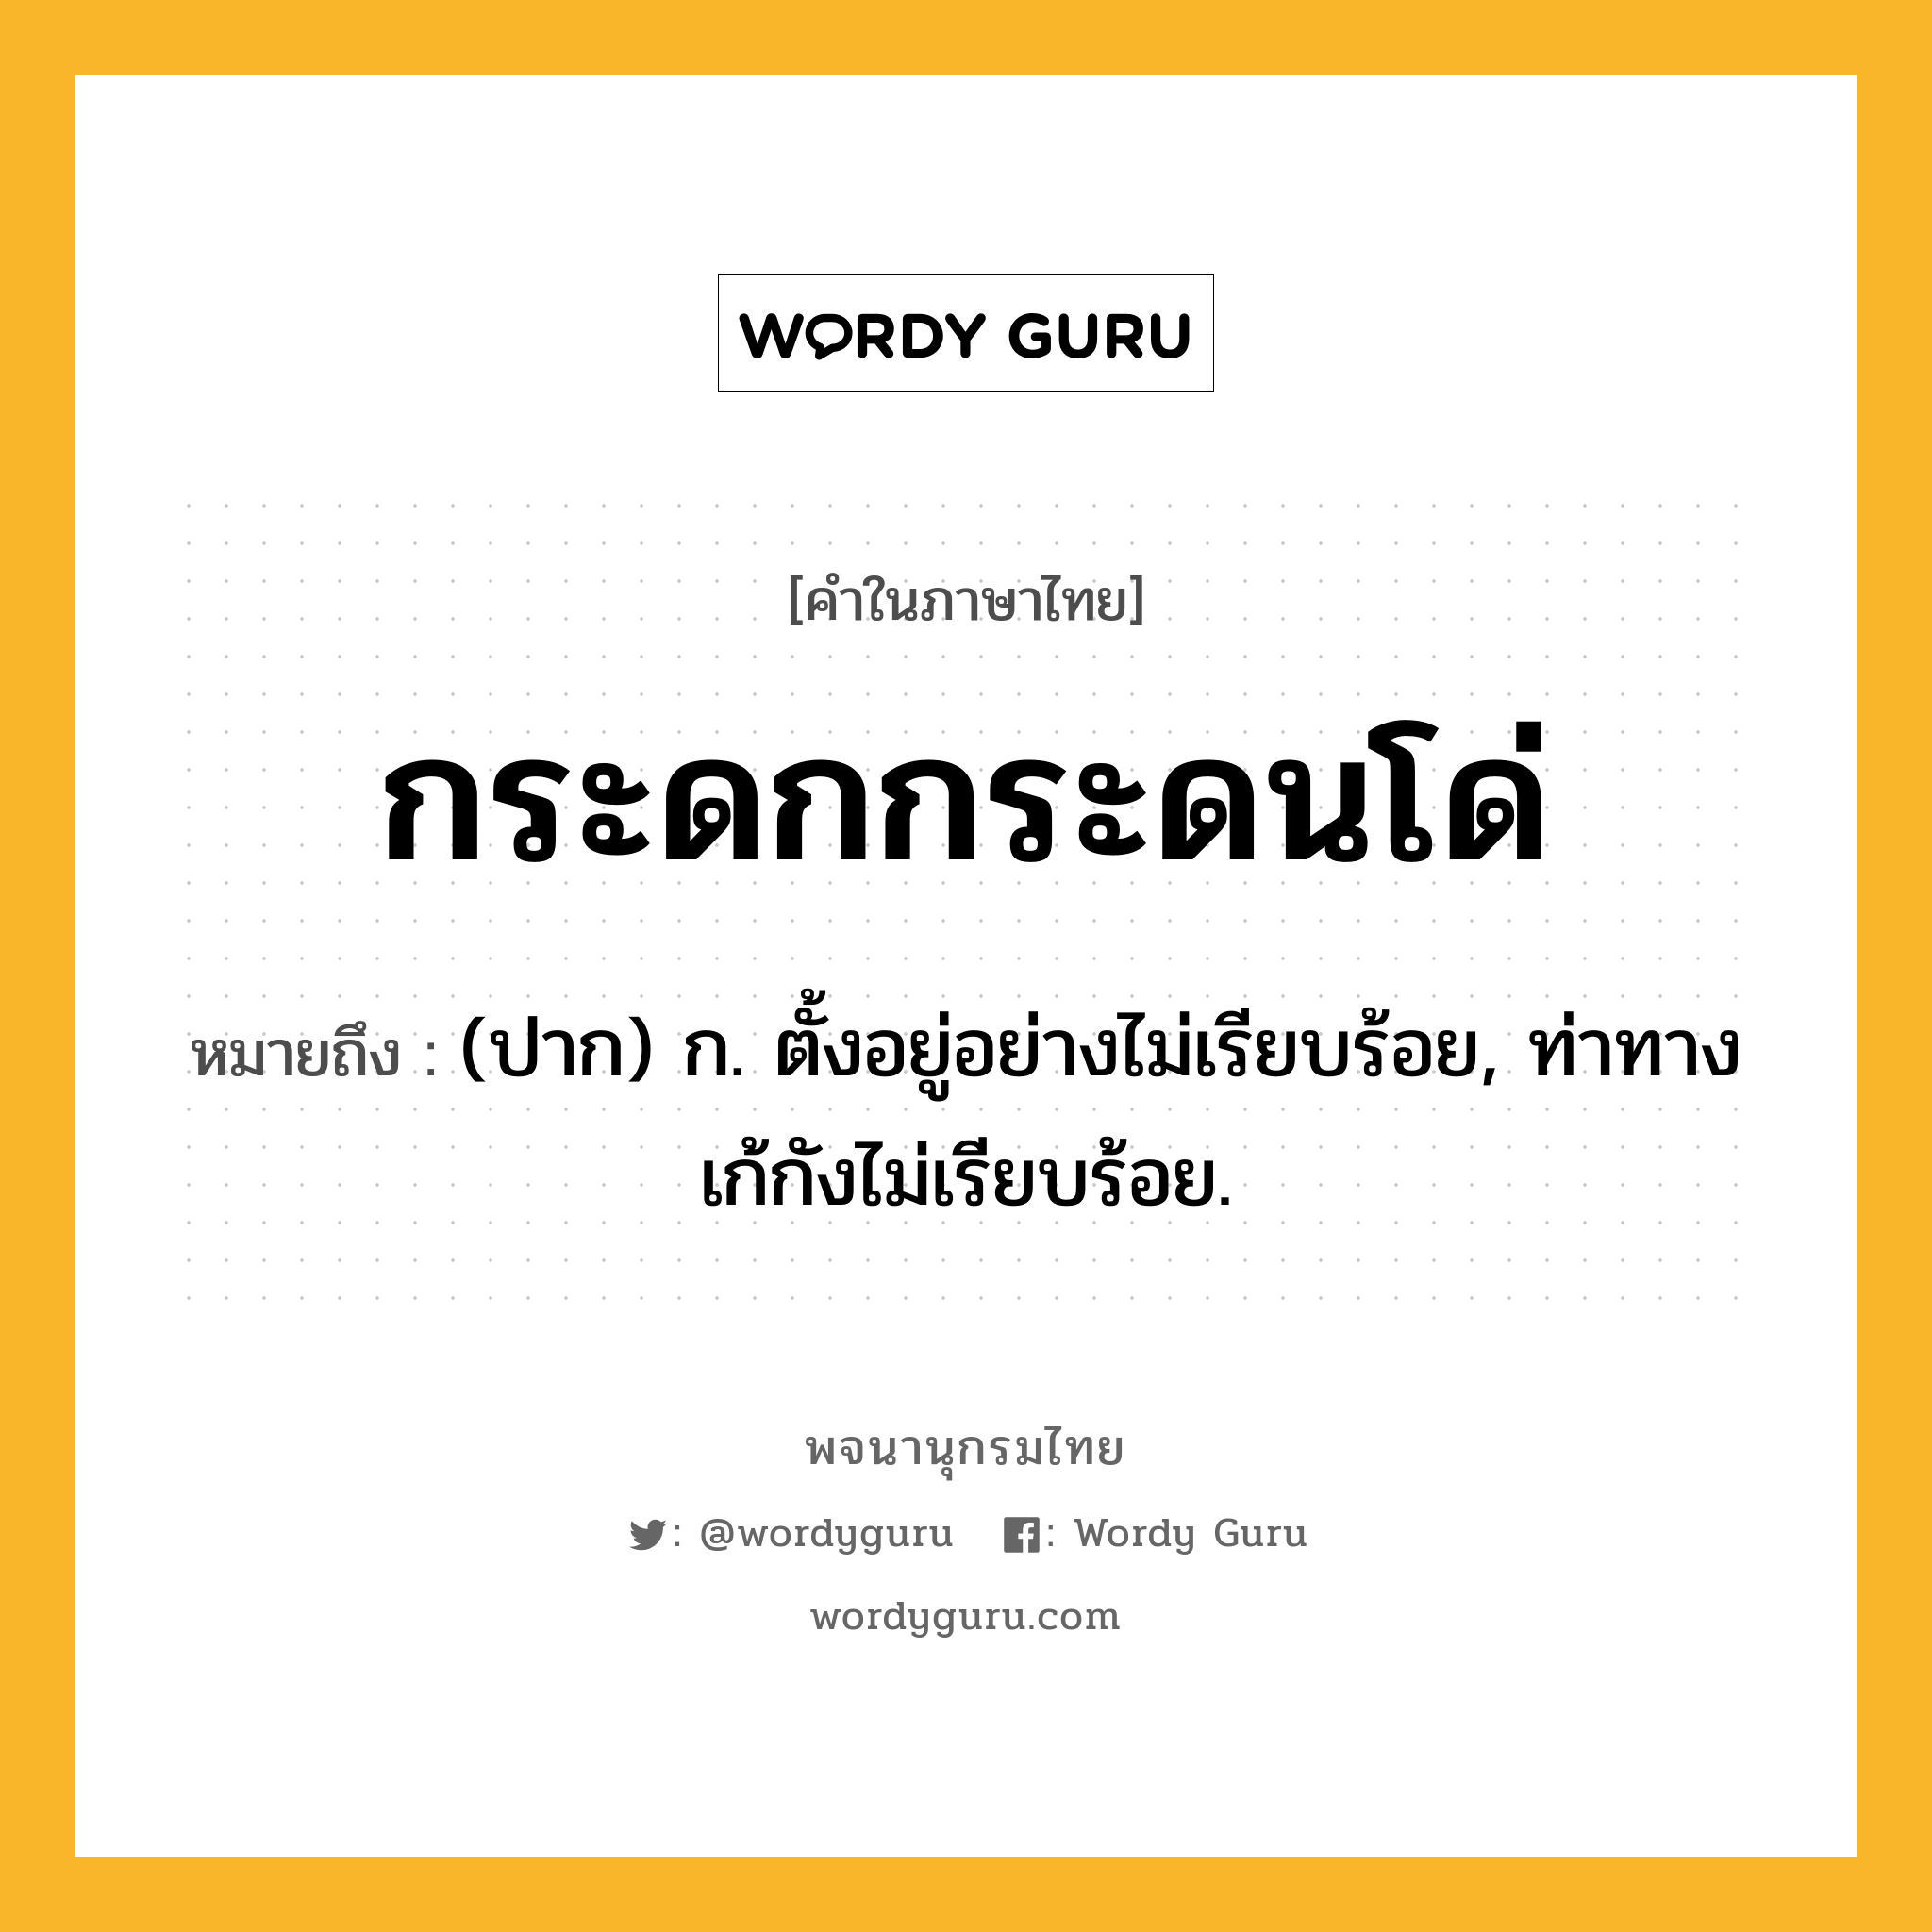 กระดกกระดนโด่ ความหมาย หมายถึงอะไร?, คำในภาษาไทย กระดกกระดนโด่ หมายถึง (ปาก) ก. ตั้งอยู่อย่างไม่เรียบร้อย, ท่าทางเก้กังไม่เรียบร้อย.